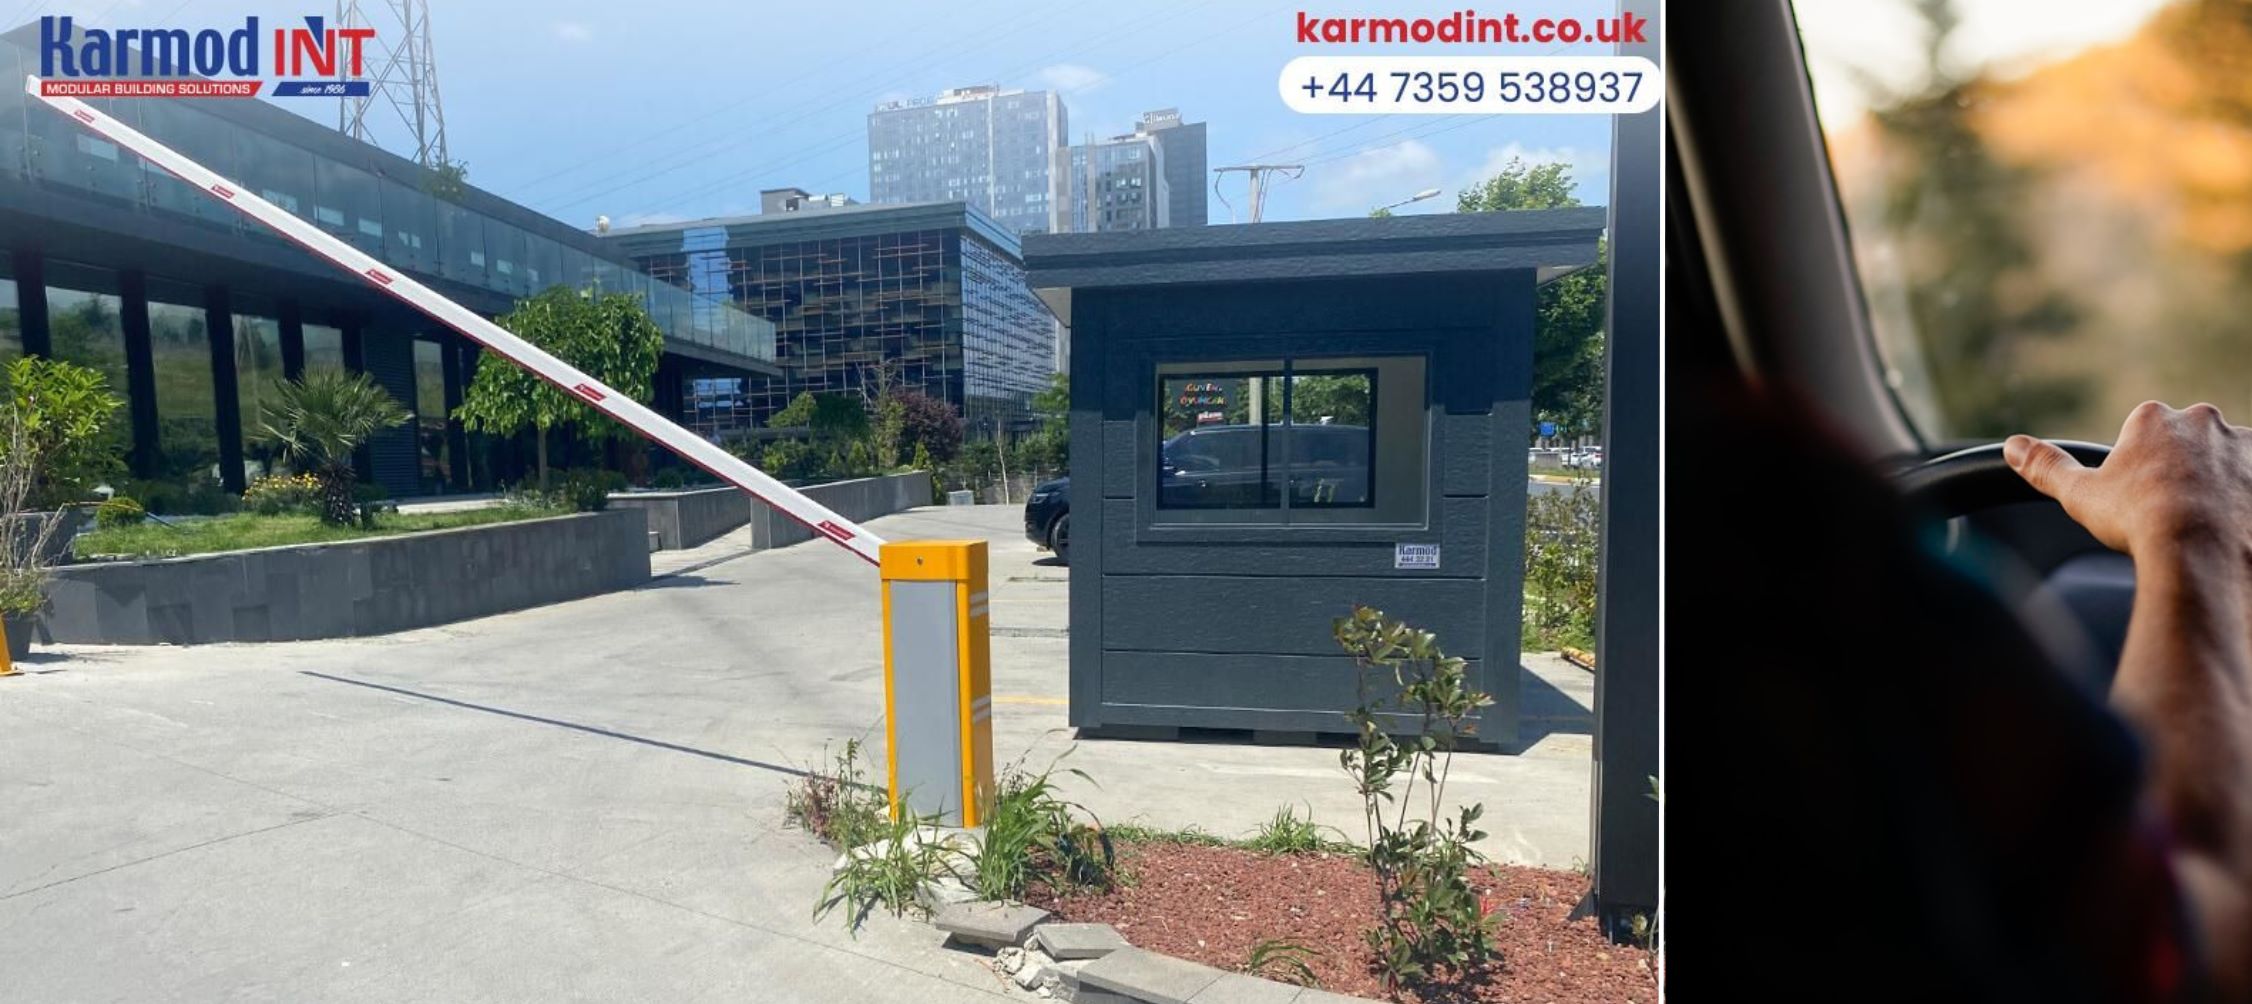 Enhance Your Parking Solutions with Karmod’s Advanced Car Park Kiosks